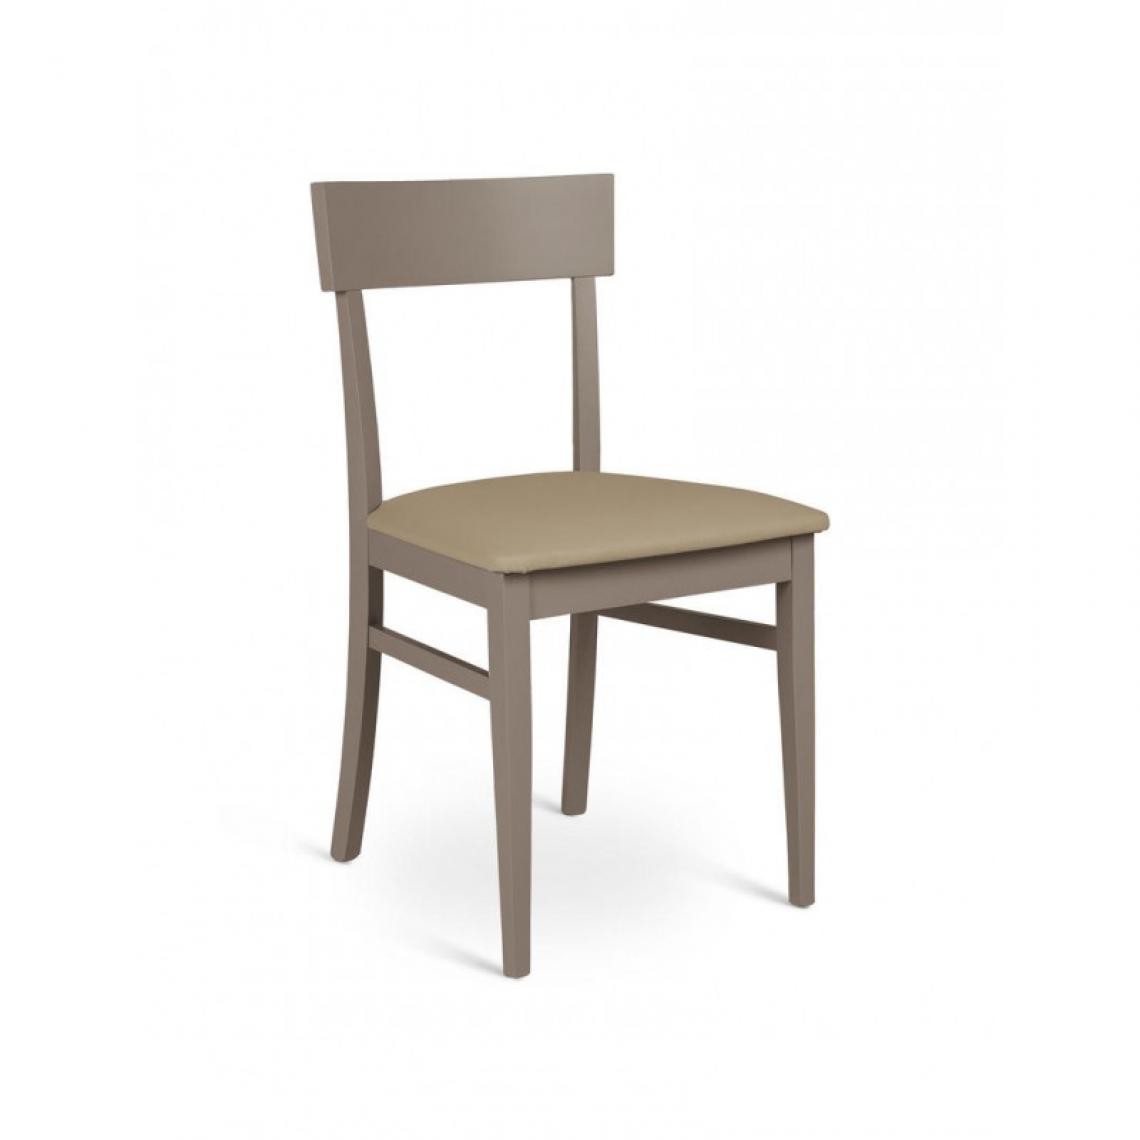 Webmarketpoint - Chaise en bois laqué gris tourterelle avec assise en simili cuir 44x45xh. 82cm - Chaises